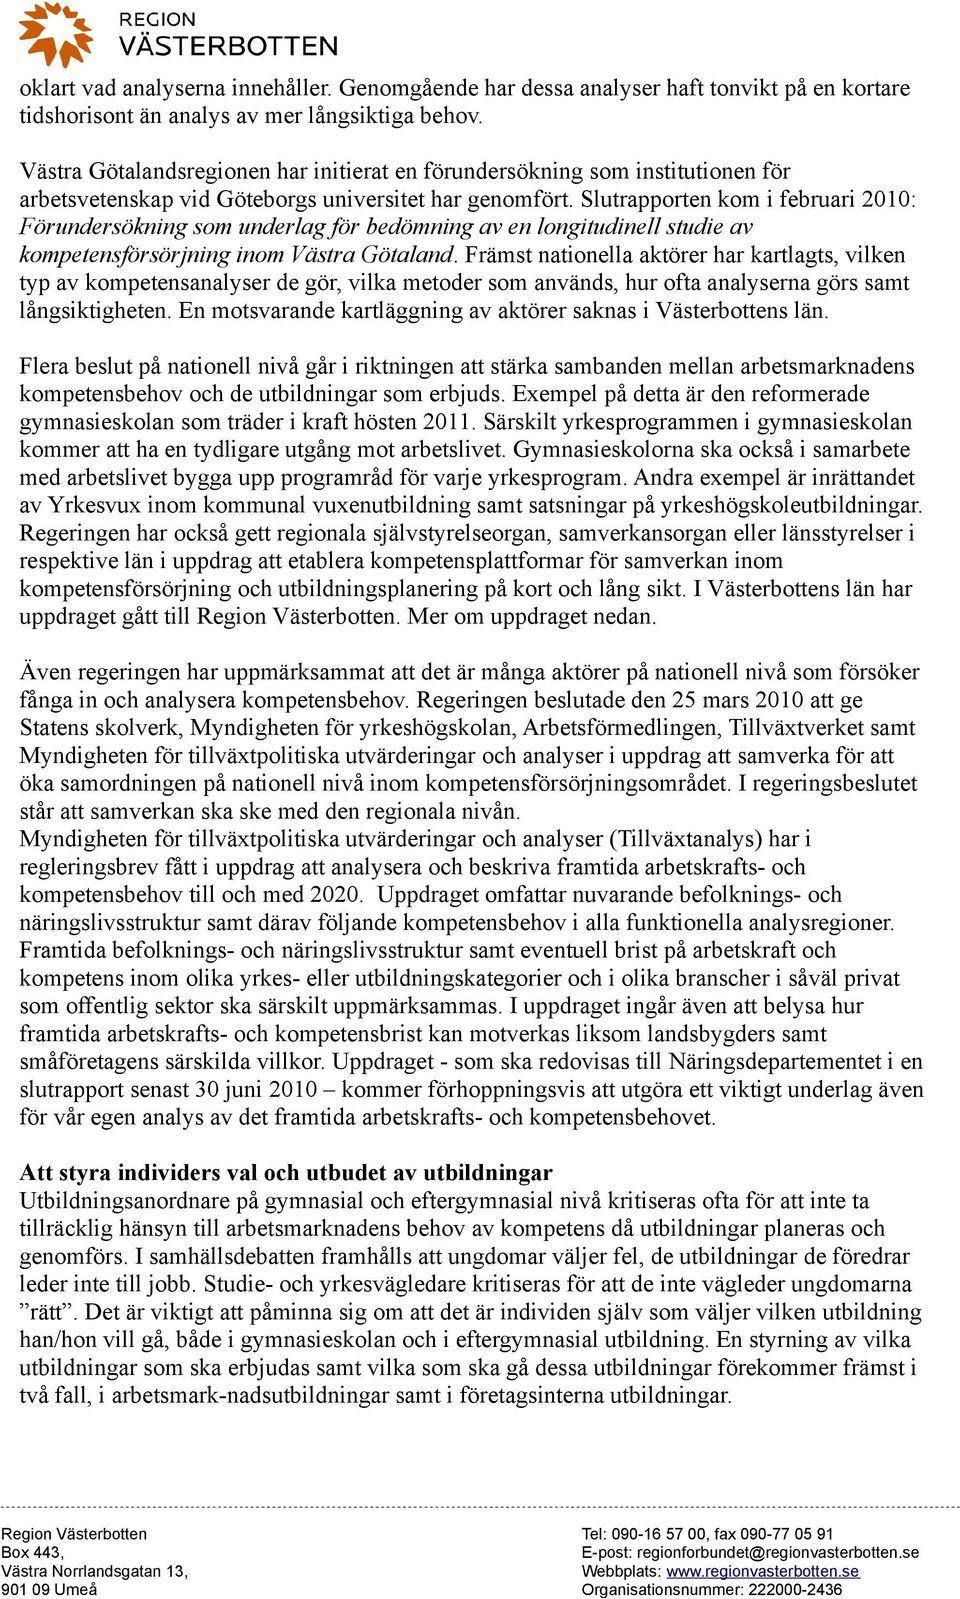 Slutrapporten kom i februari 200: Förundersökning som underlag för bedömning av en longitudinell studie av kompetensförsörjning inom Västra Götaland.